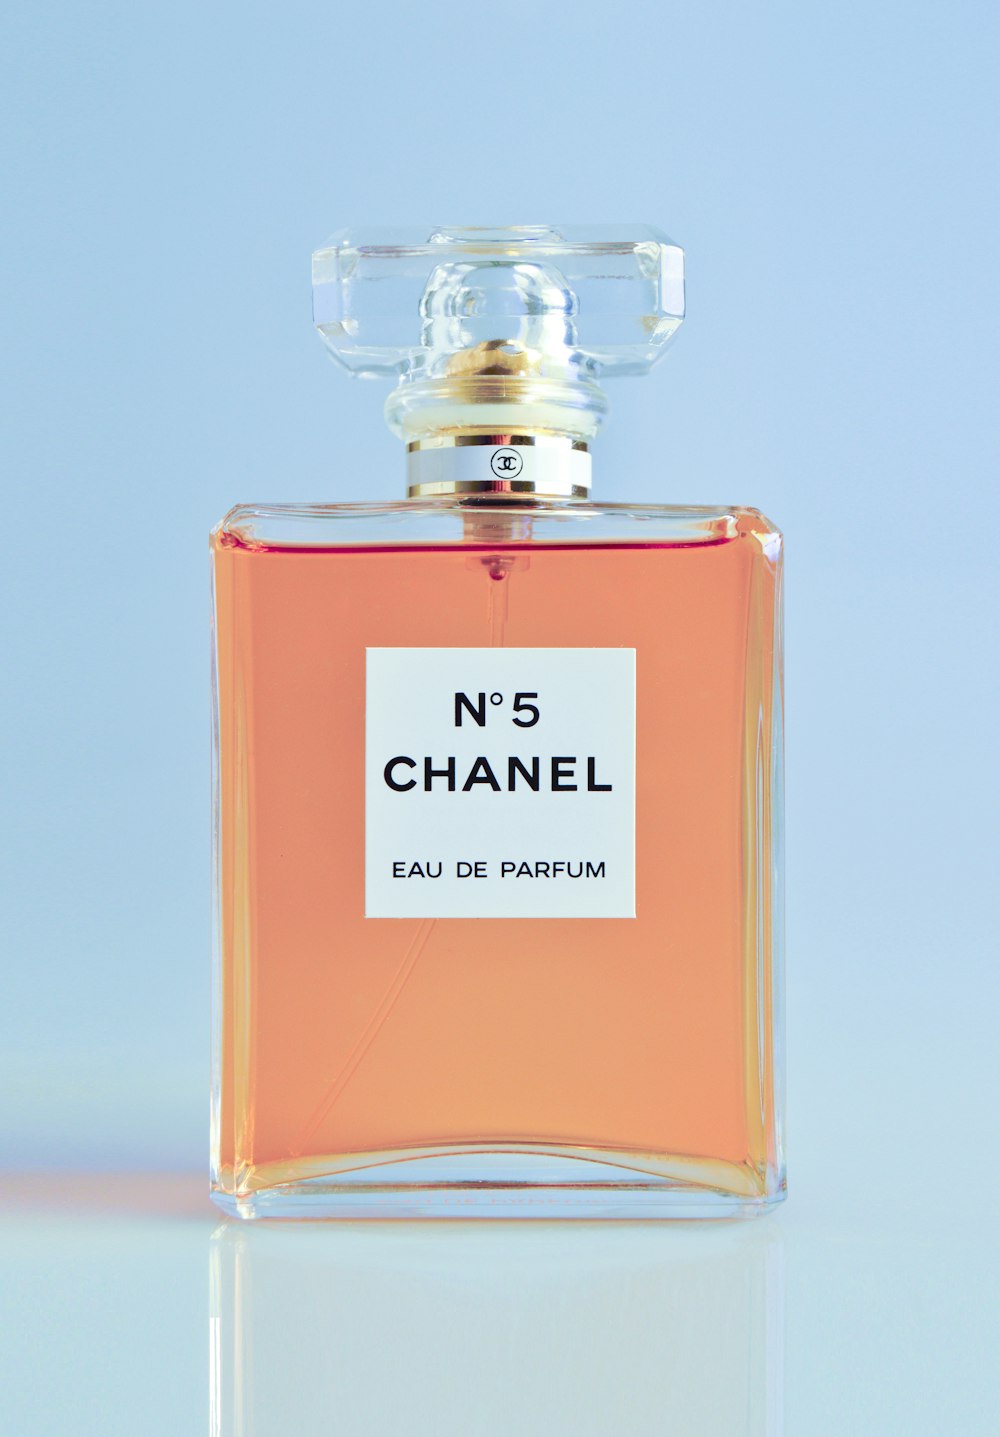 N5 Chanel eau de parfum frasco spray